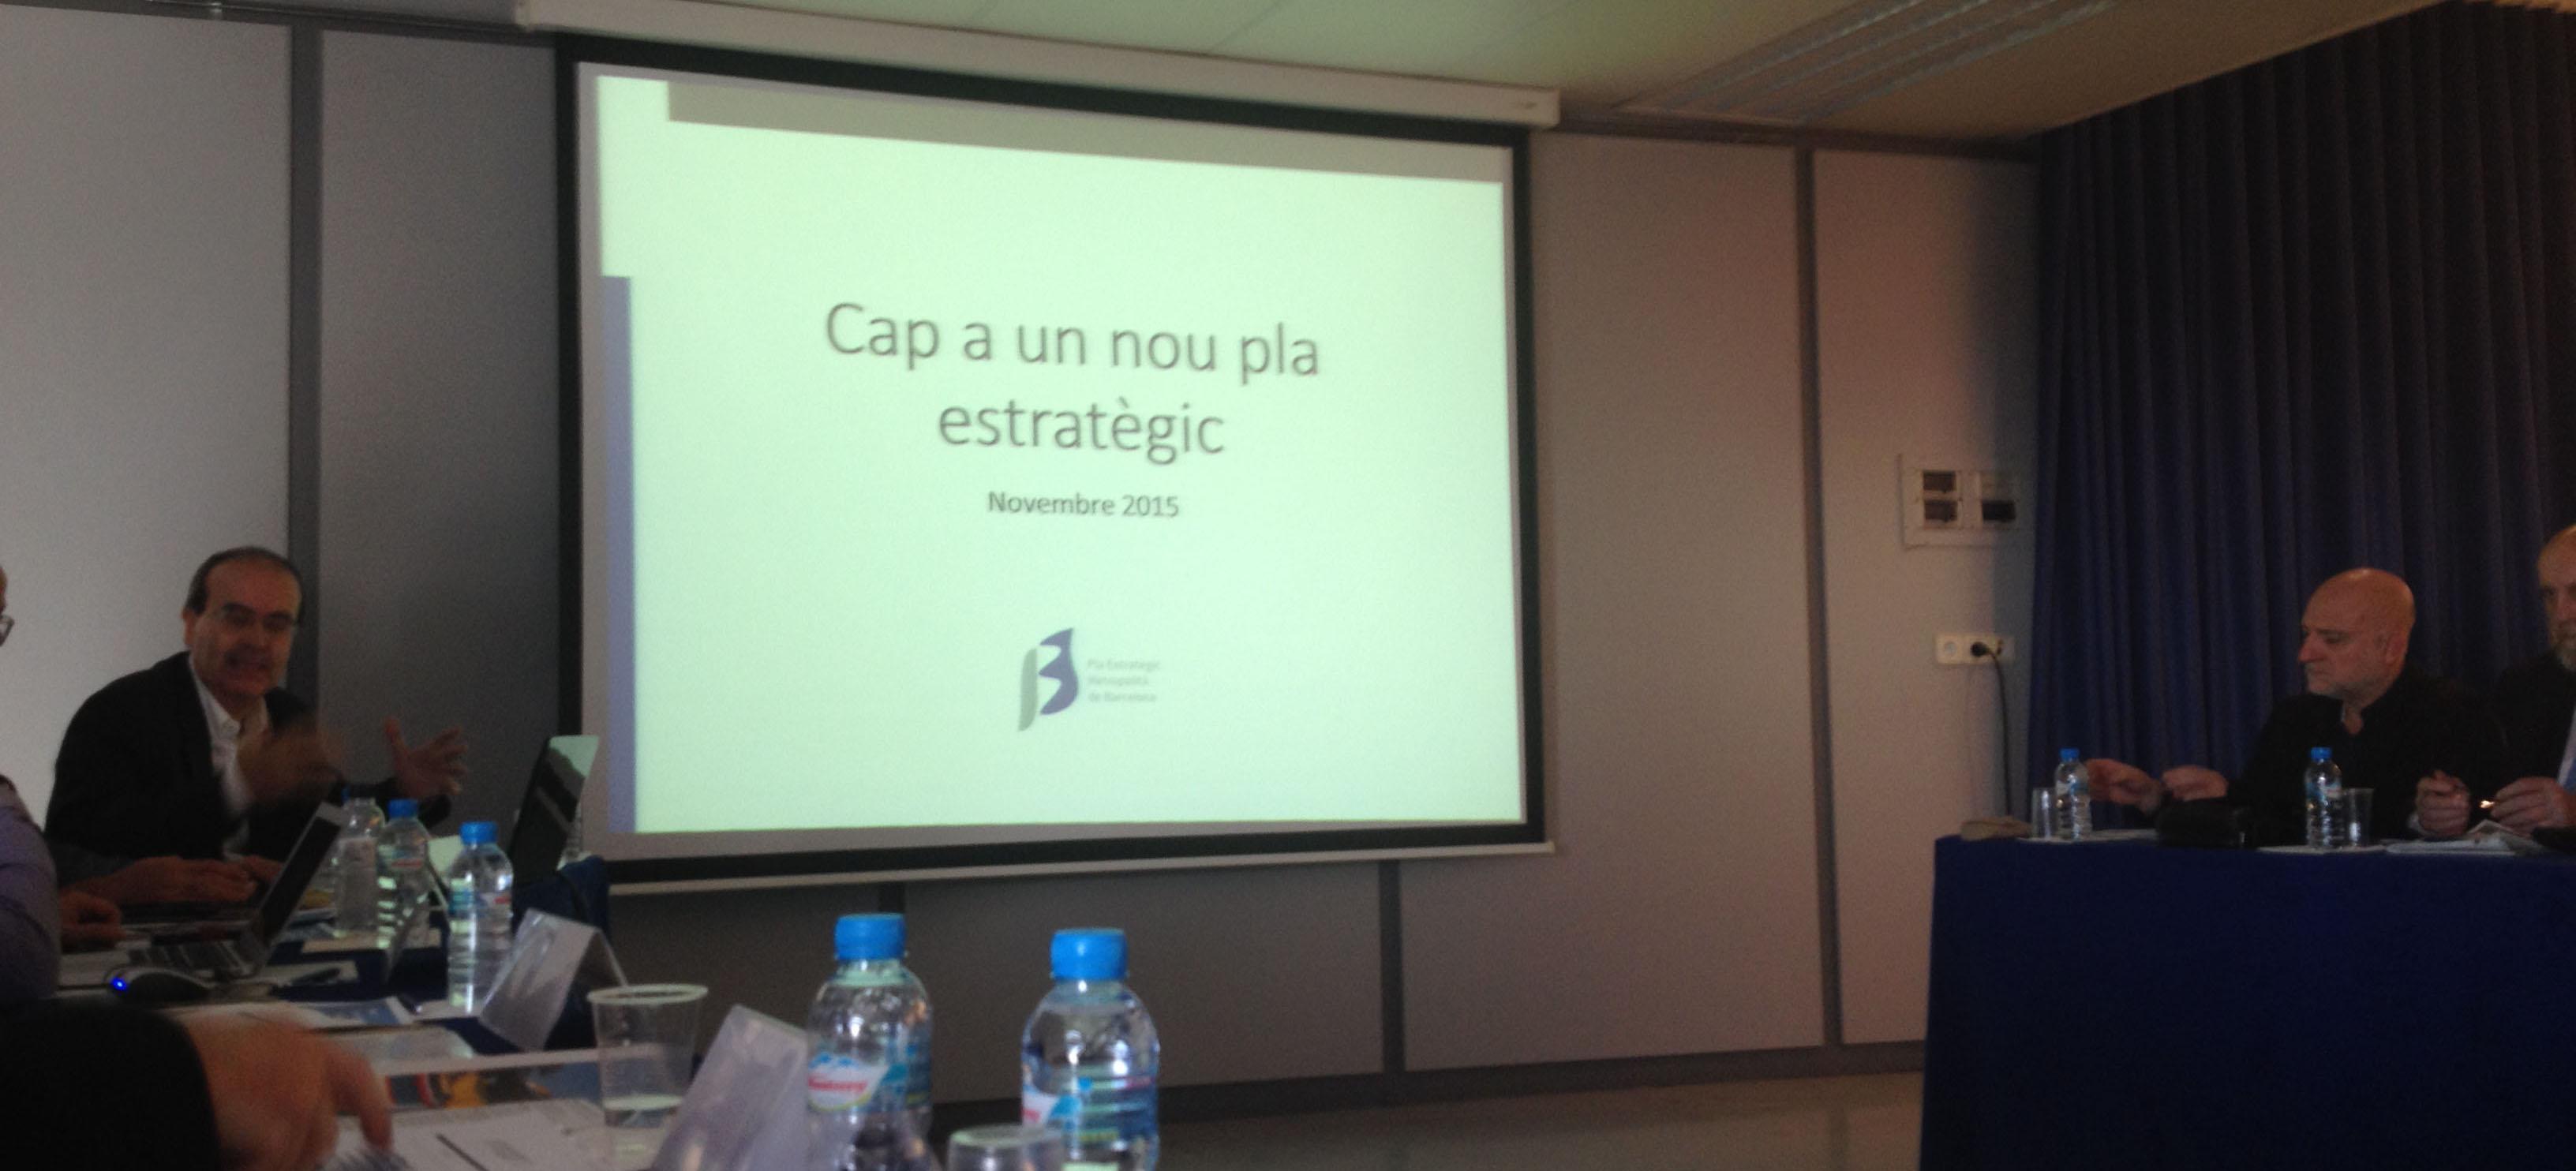 Presentación Carles Castells